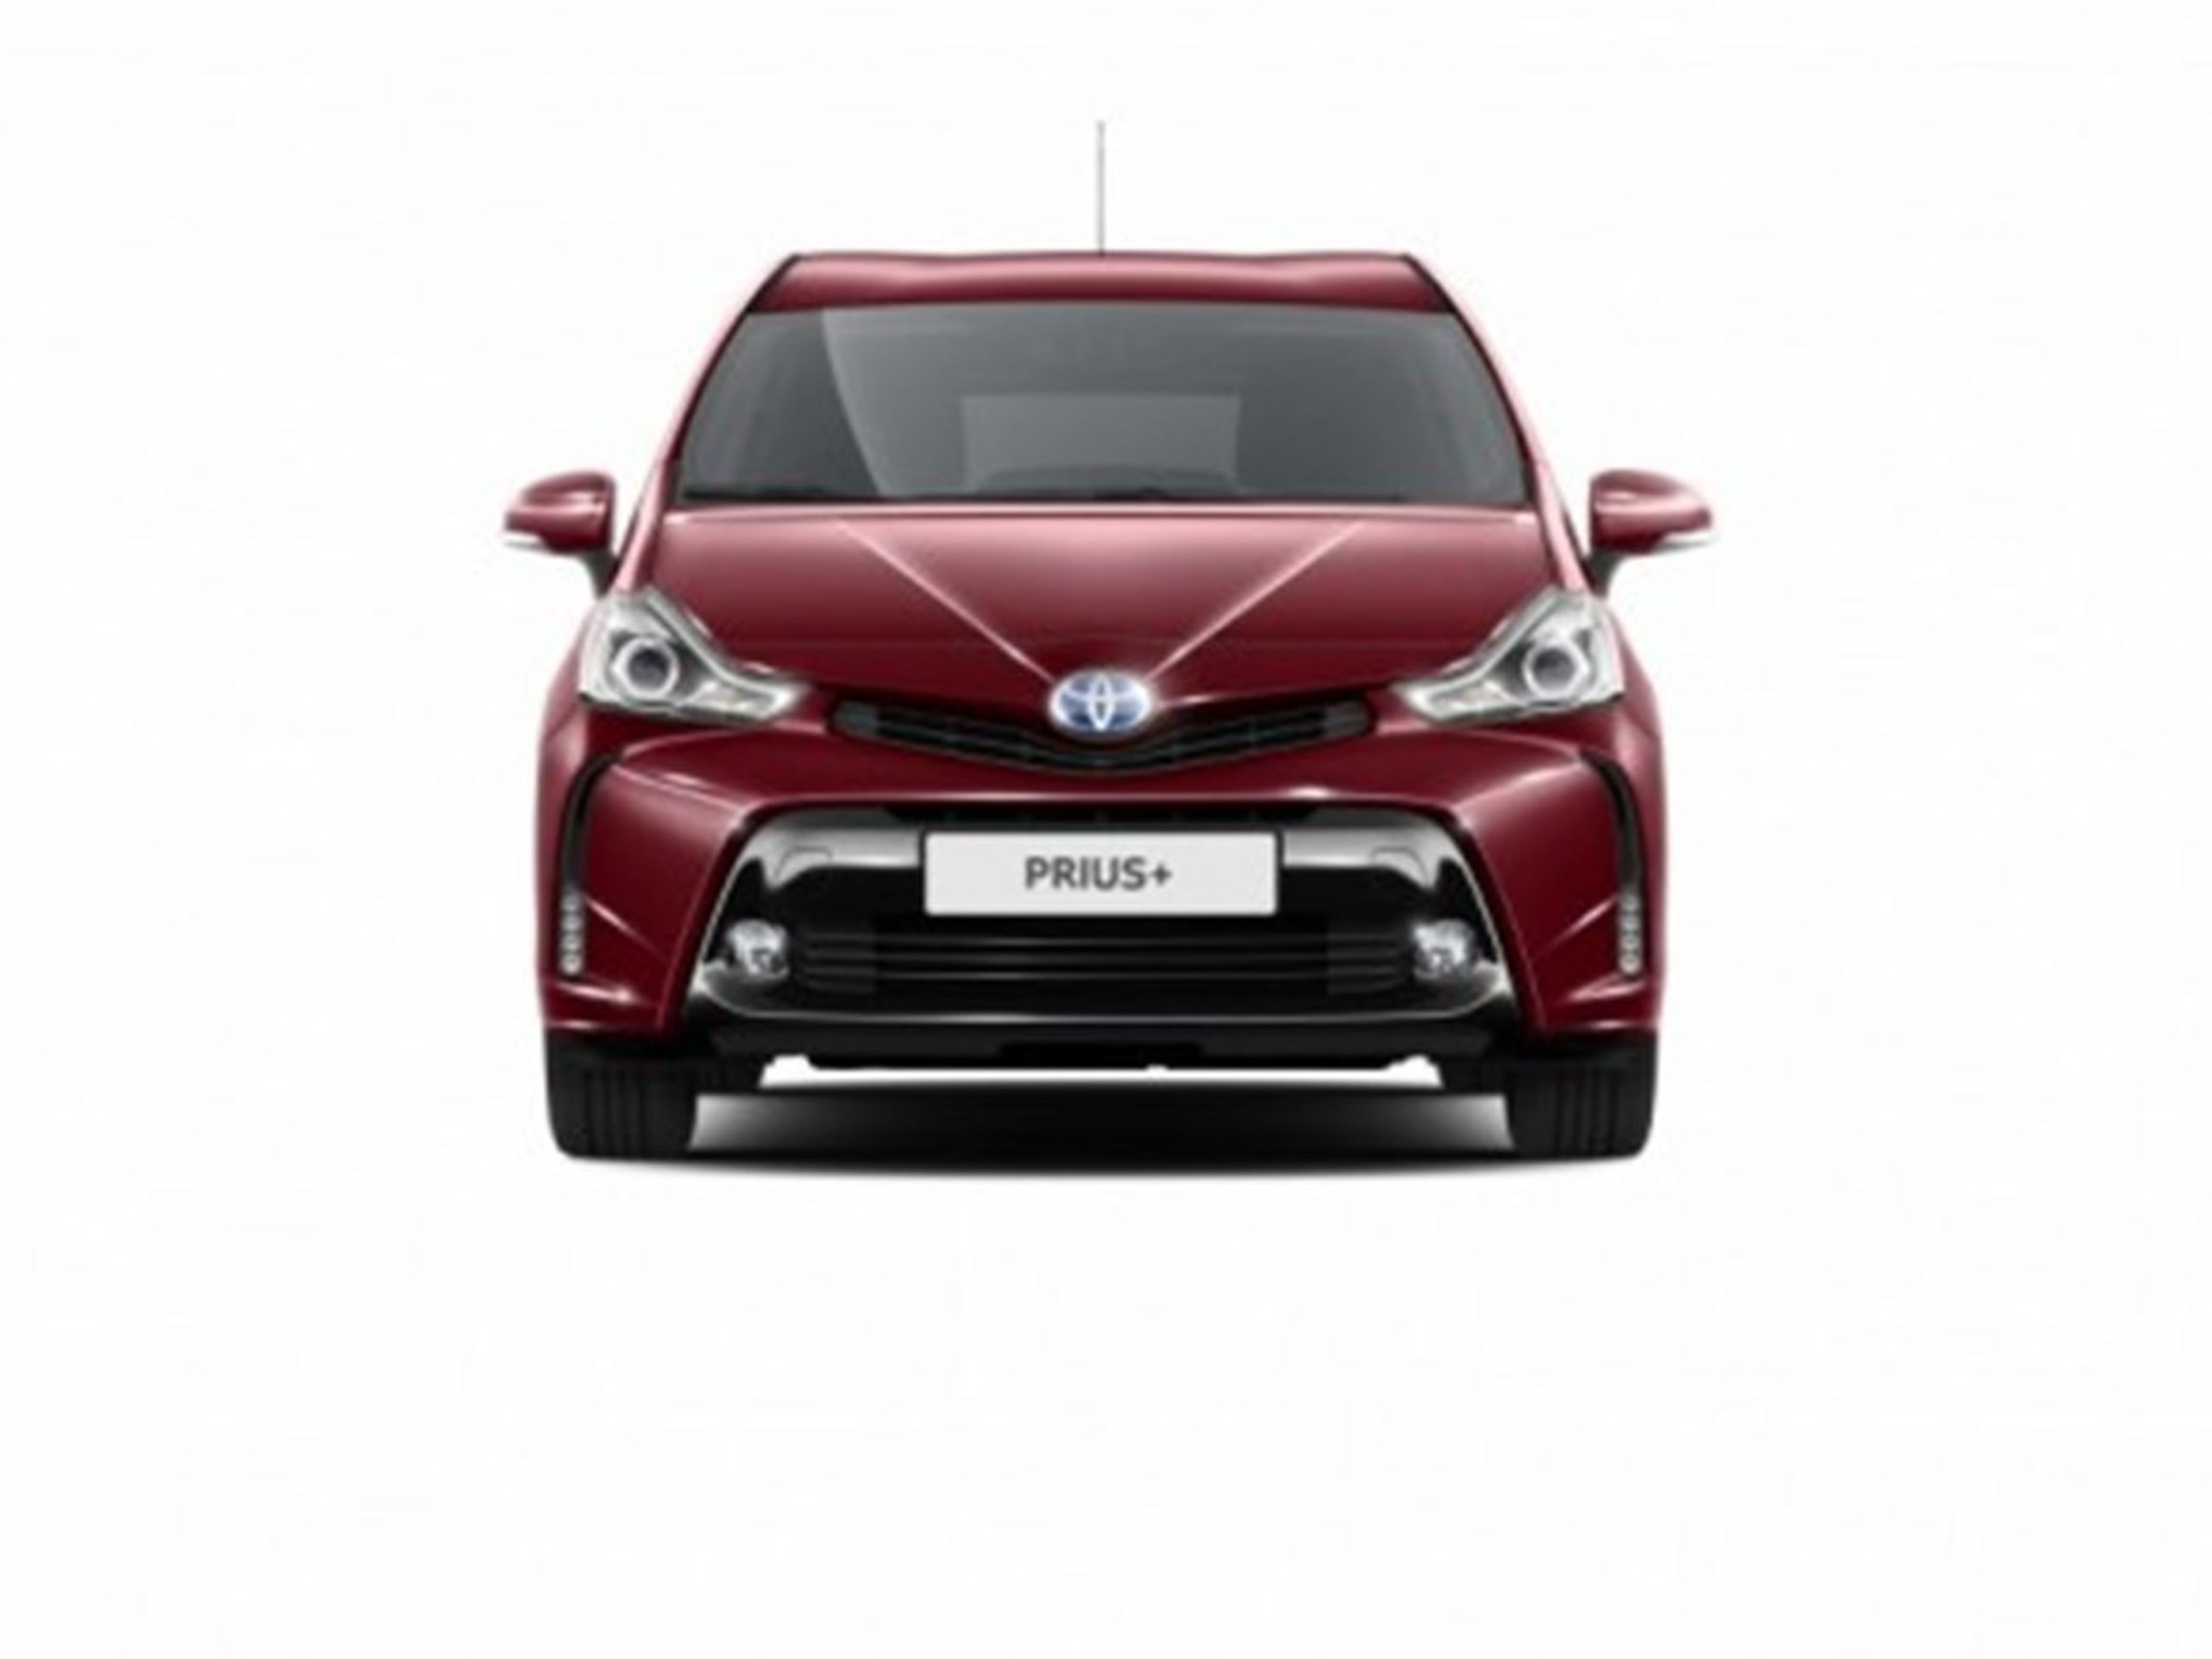 Toyota Prius + frontal